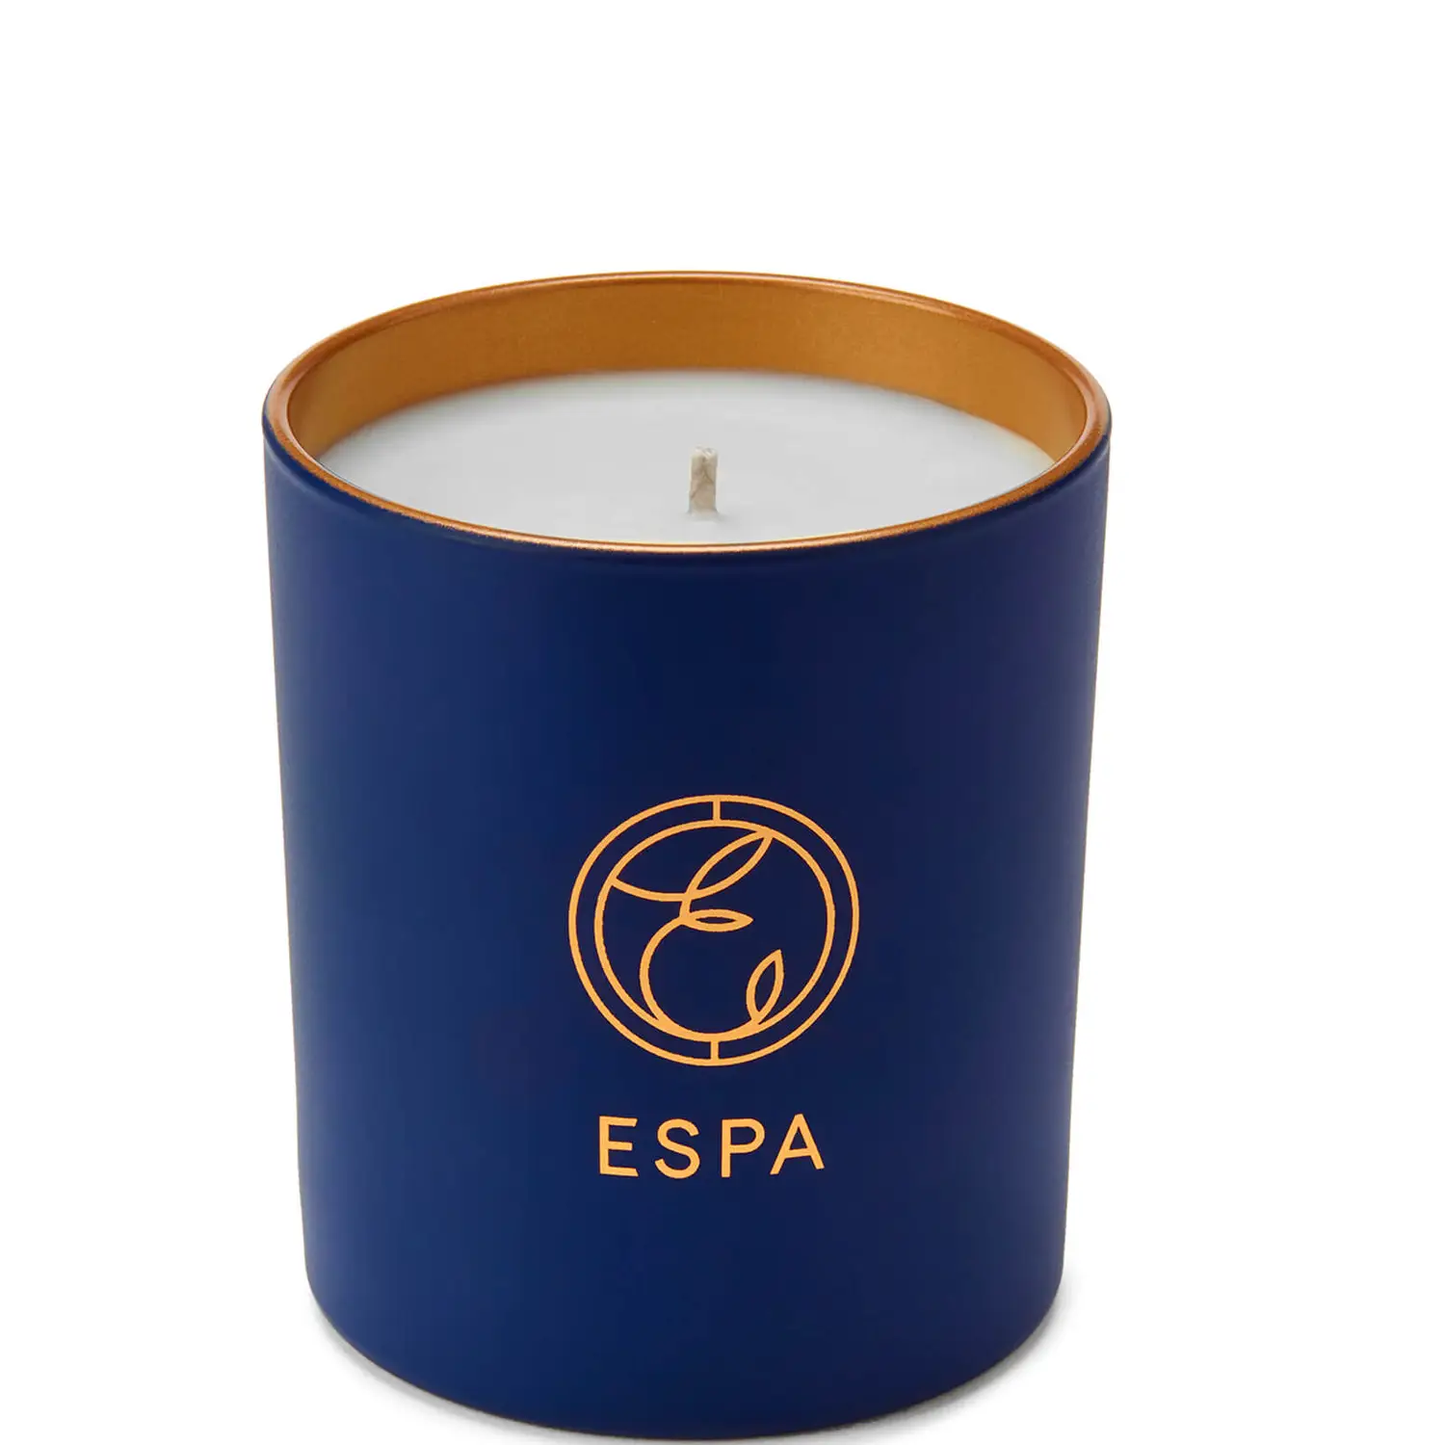 ESPA Aromaterapinė namų žvakė 200 g